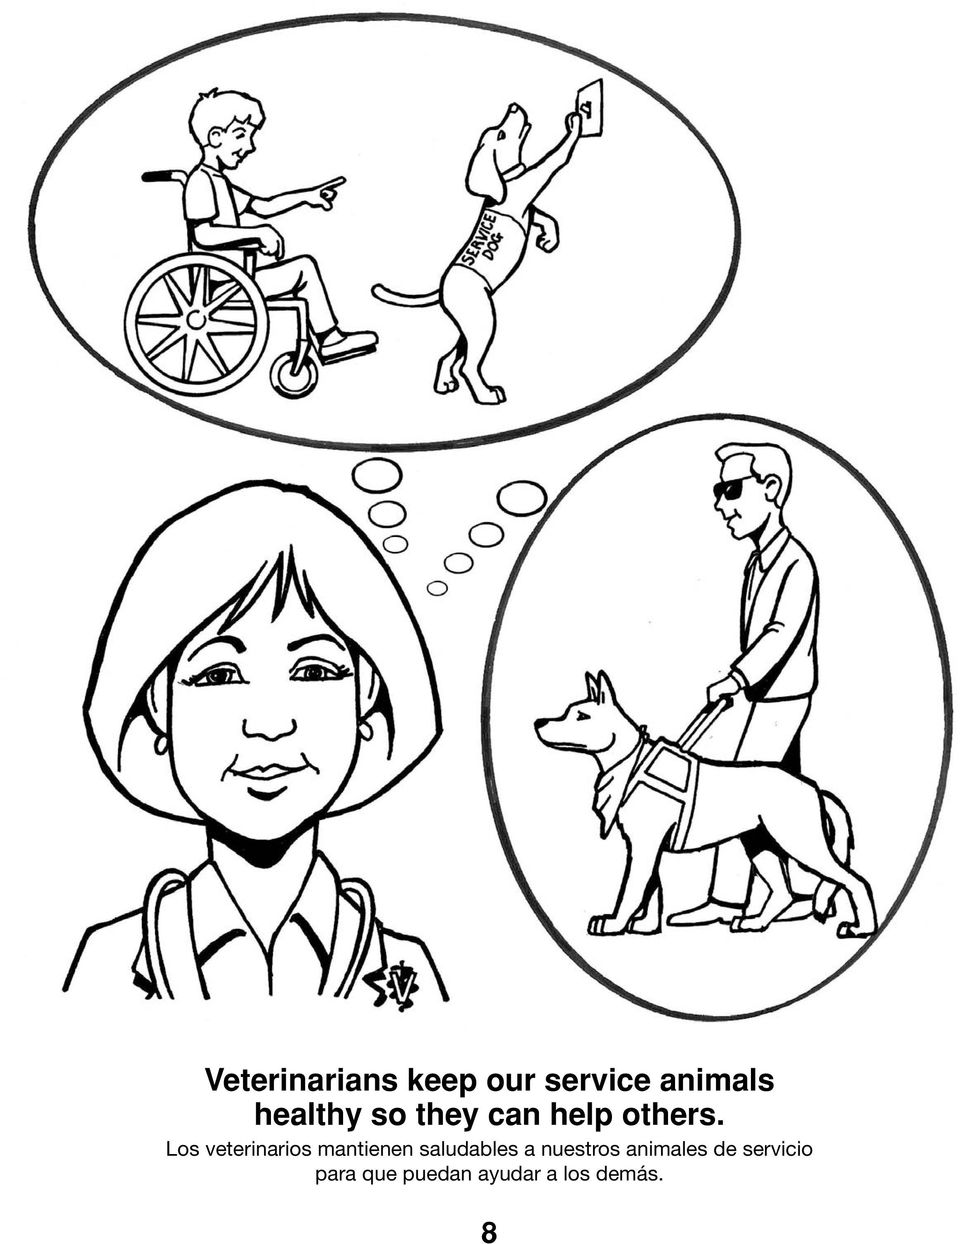 Los veterinarios mantienen saludables a